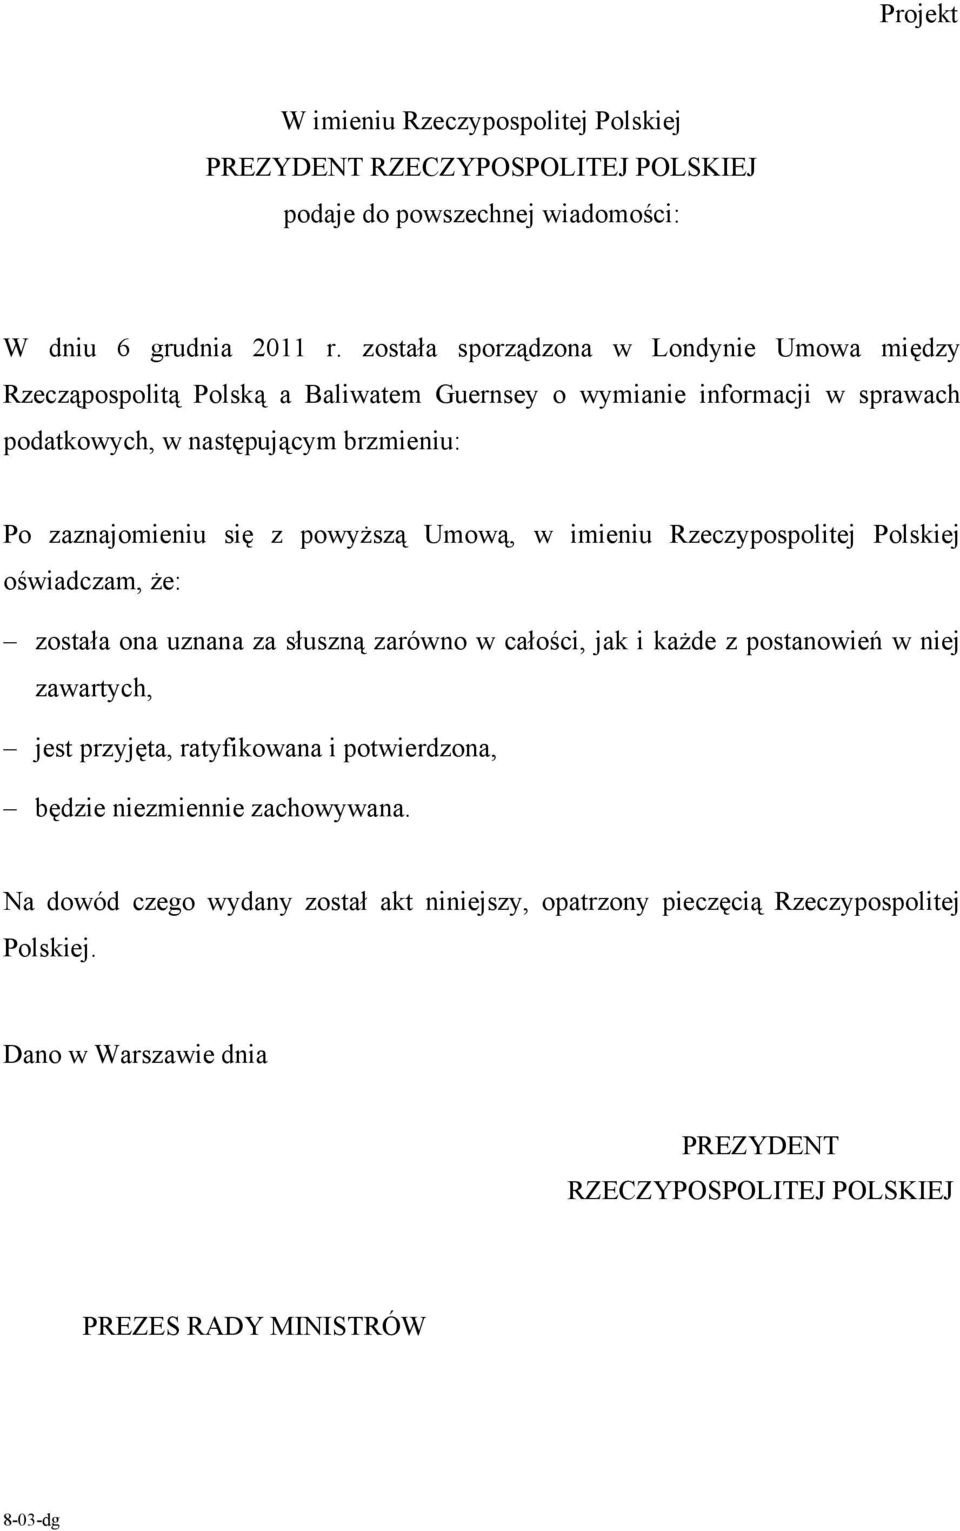 powyższą Umową, w imieniu Rzeczypospolitej Polskiej oświadczam, że: została ona uznana za słuszną zarówno w całości, jak i każde z postanowień w niej zawartych, jest przyjęta,